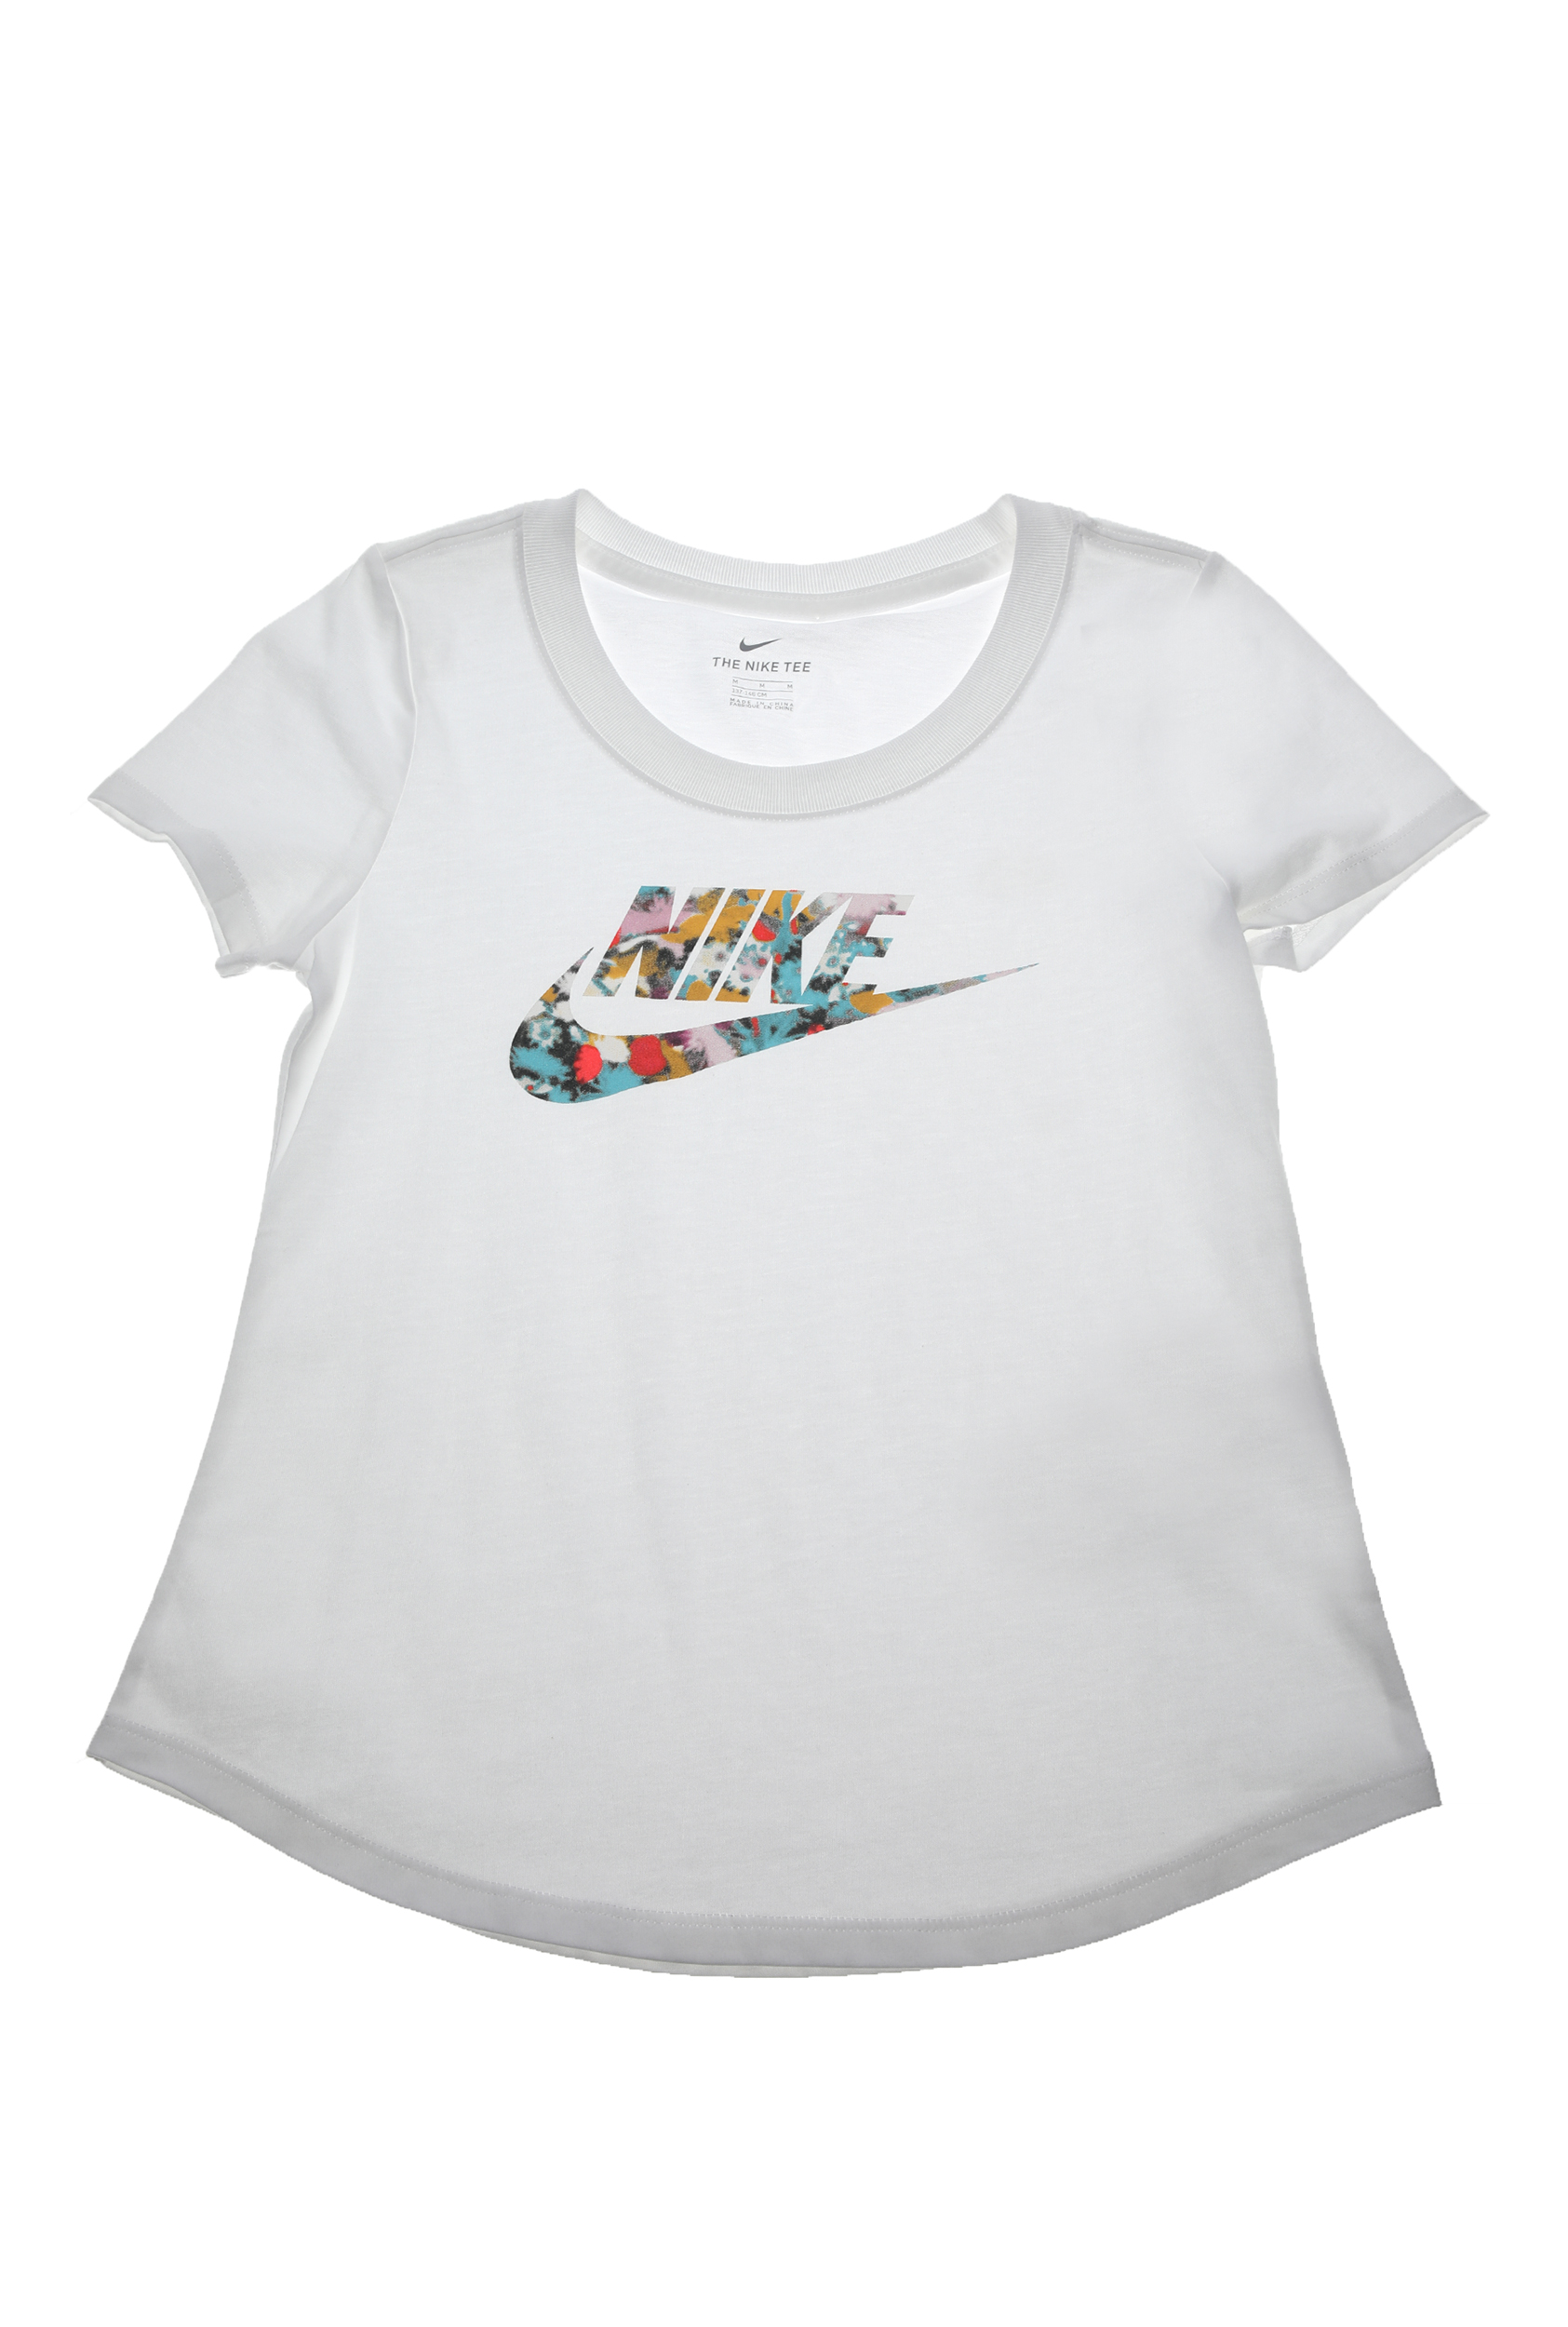 Παιδικά/Girls/Ρούχα/Αθλητικά NIKE - Παιδική κοντομάνικη μπλούζα NIKE DYE SCOOP FUTURA λευκή